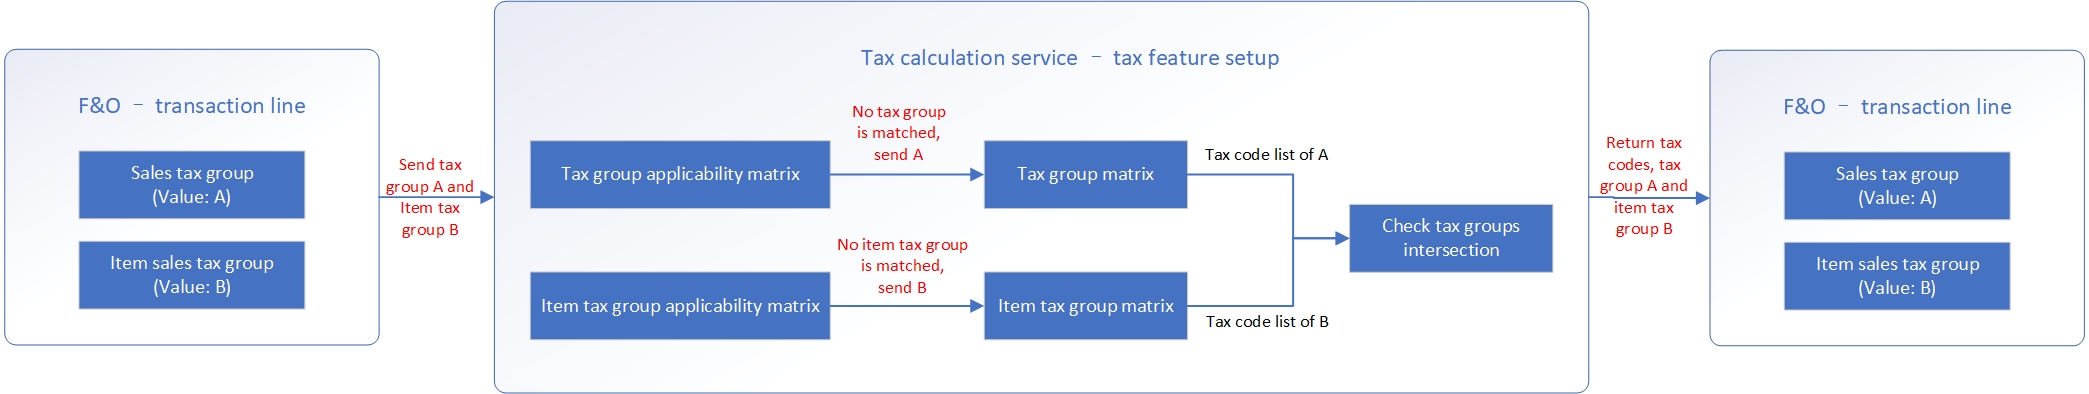 Captura de tela do fluxo que combina a lógica de determinação do código de imposto com a substituição do imposto = Não e a incompatibilidade das regras de aplicabilidade.